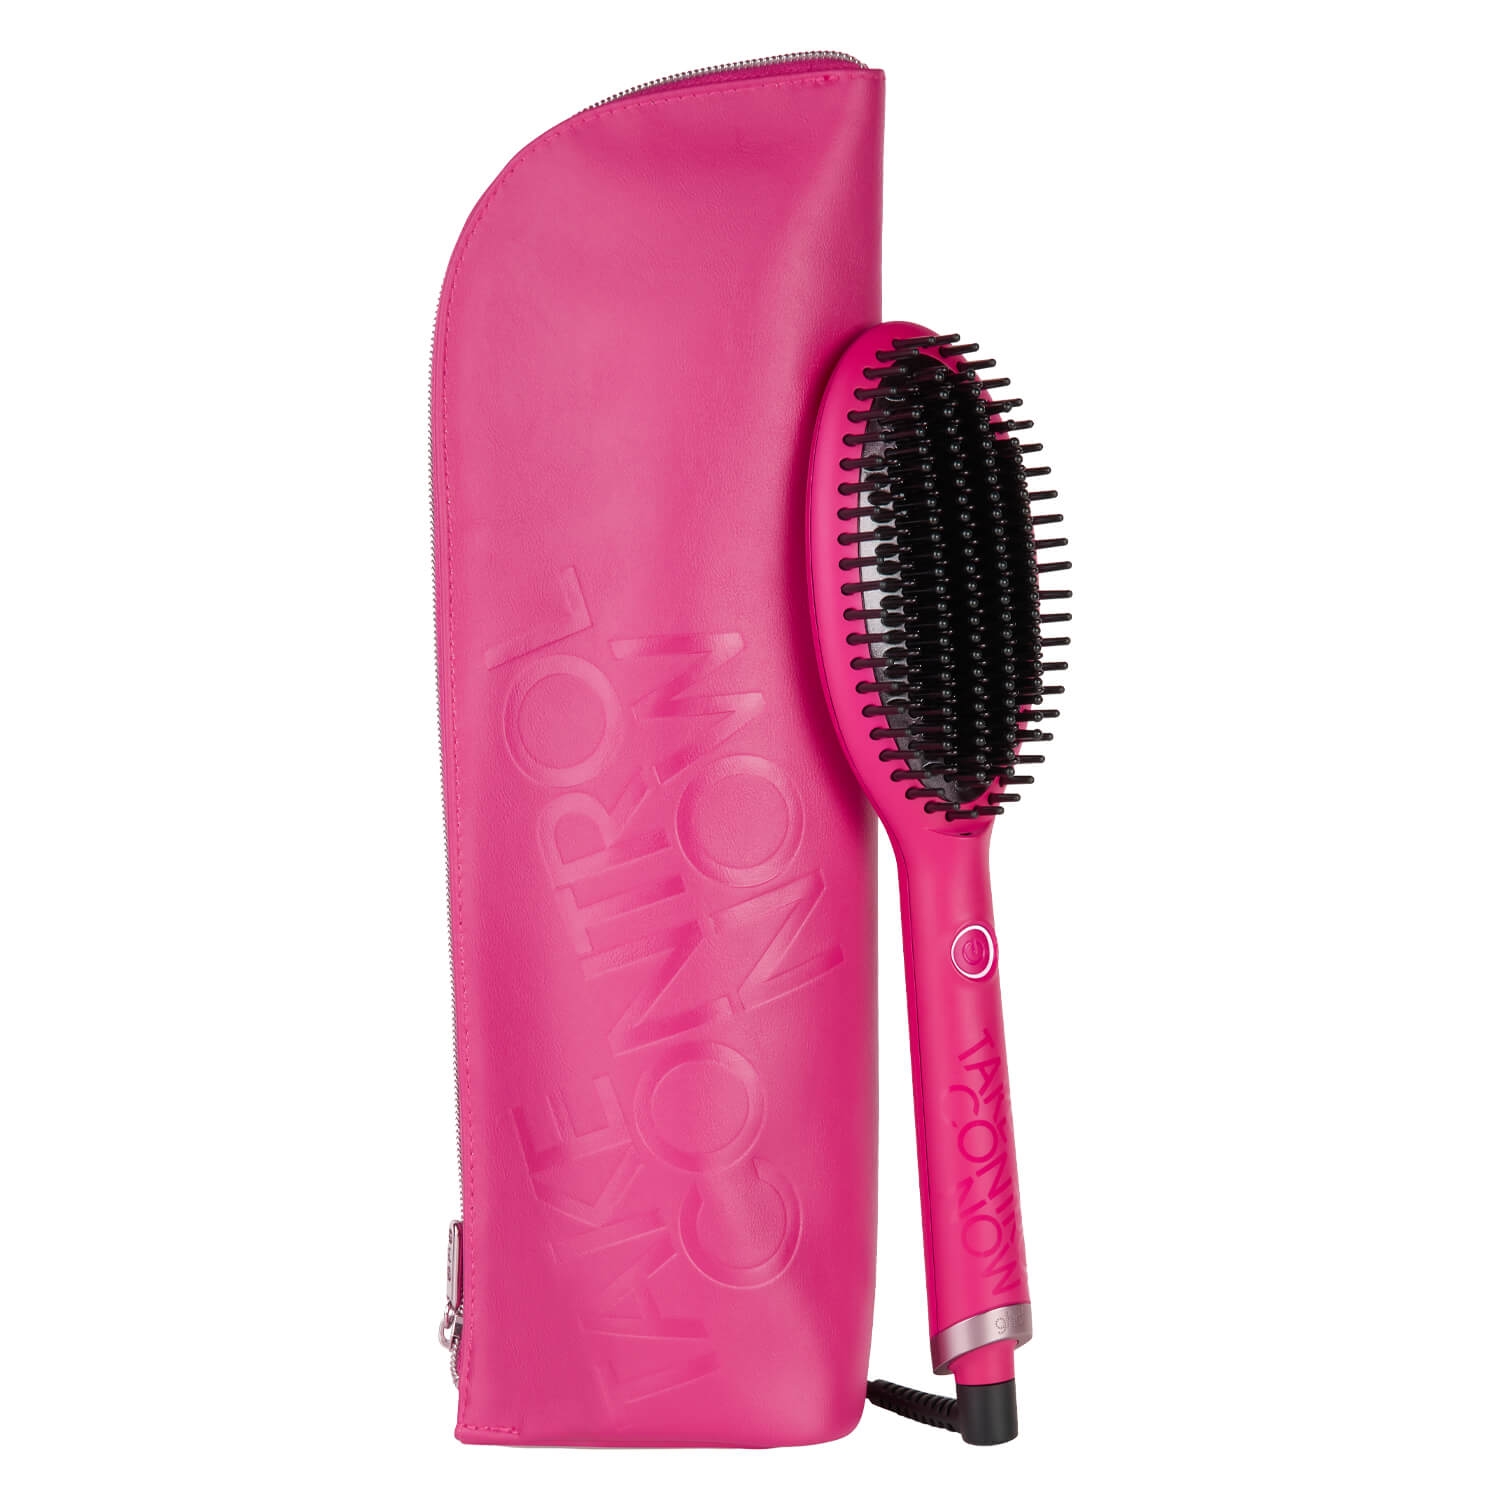 Produktbild von Take Control Now Glide Hot Brush Pink